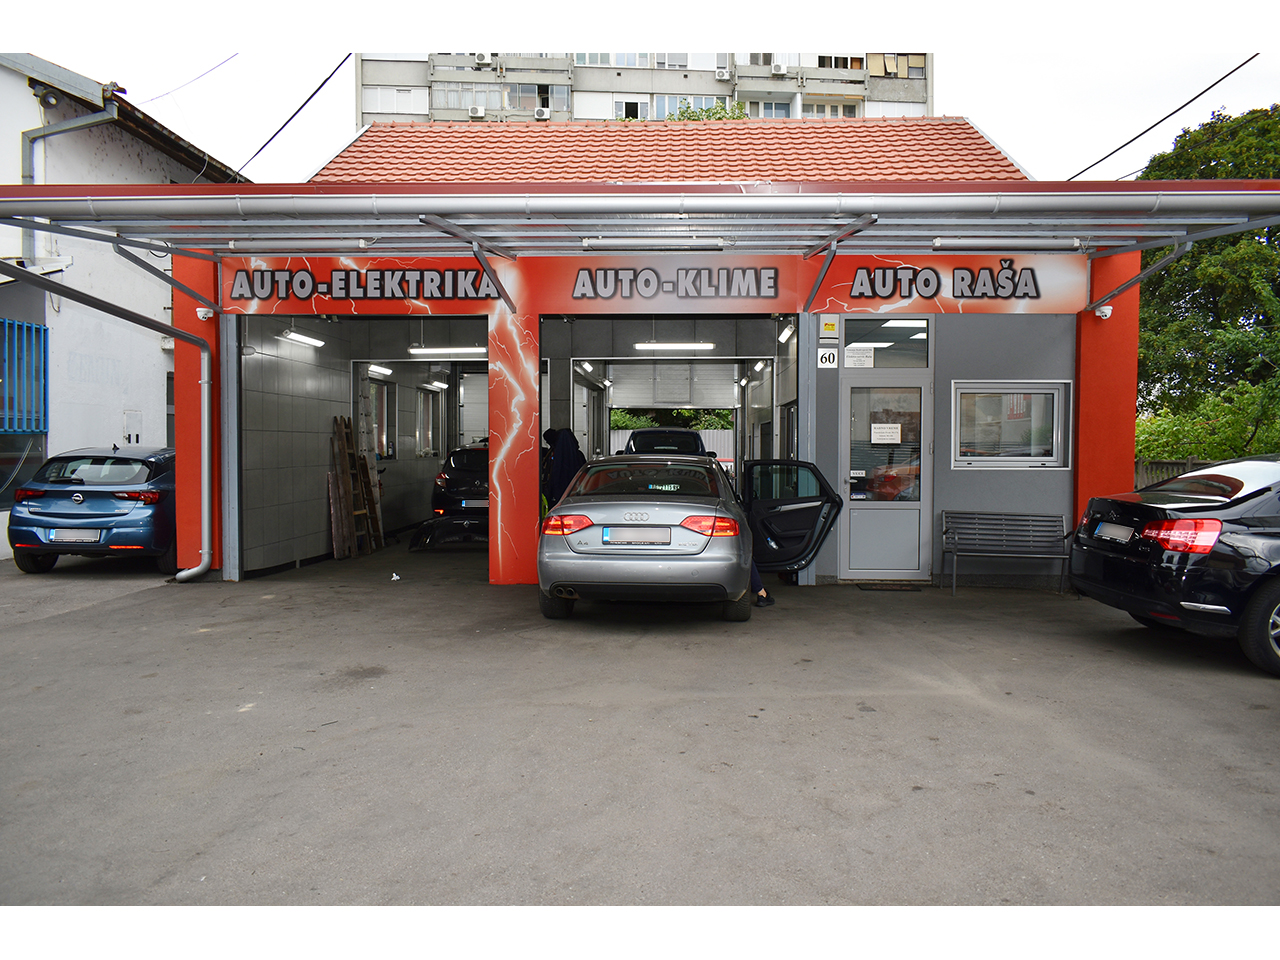 CAR ELECTRICIAN RASA Car electricians Beograd